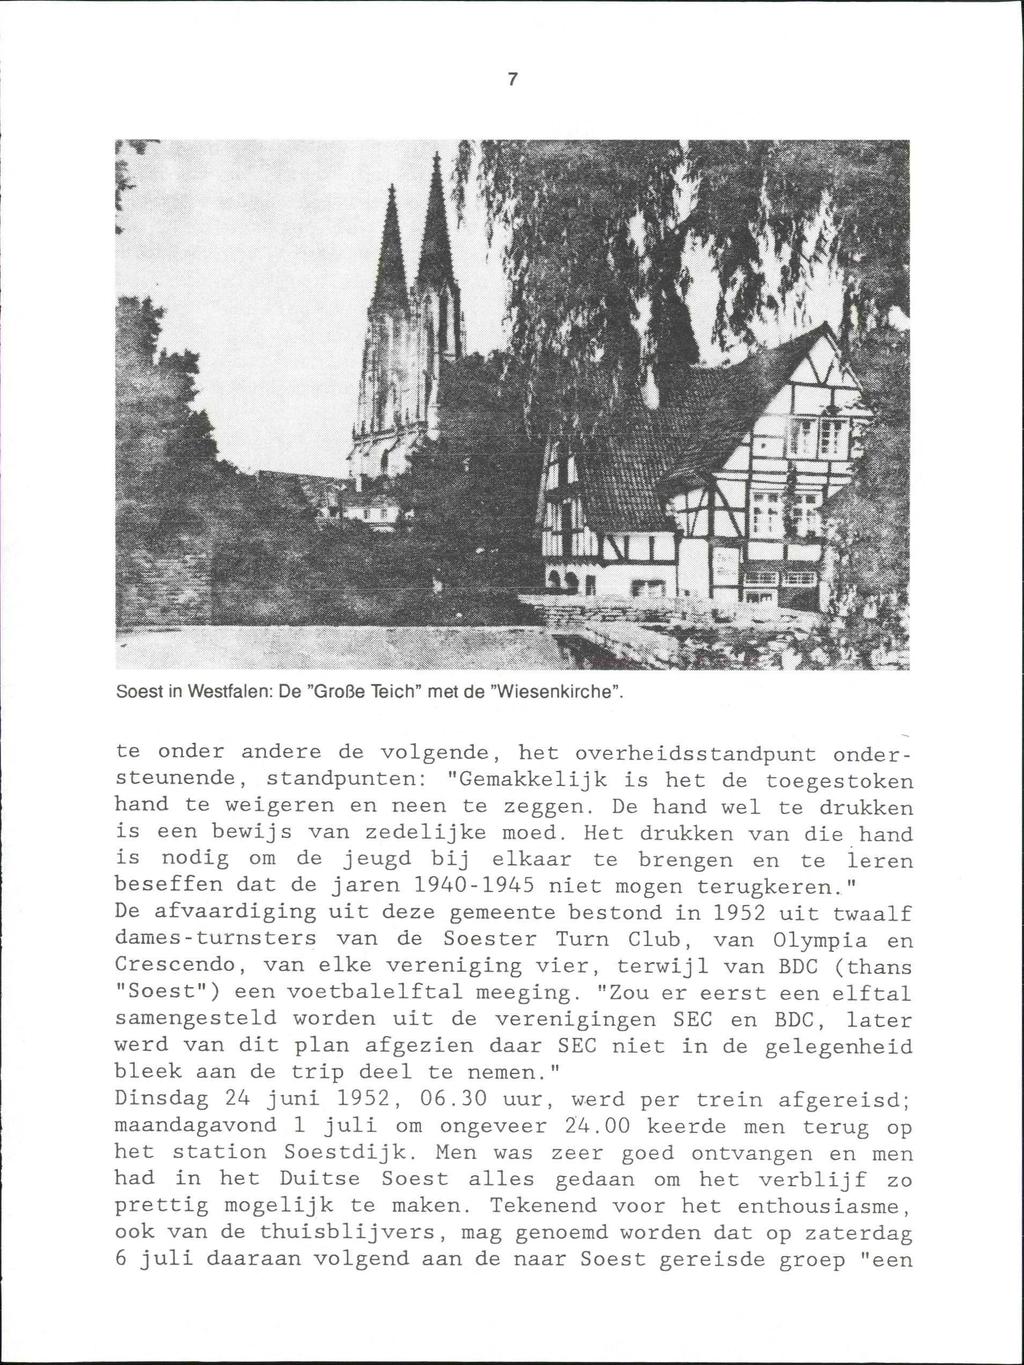 Soest in Westfalen: De "Große Teich" met de "Wiesenkirche".